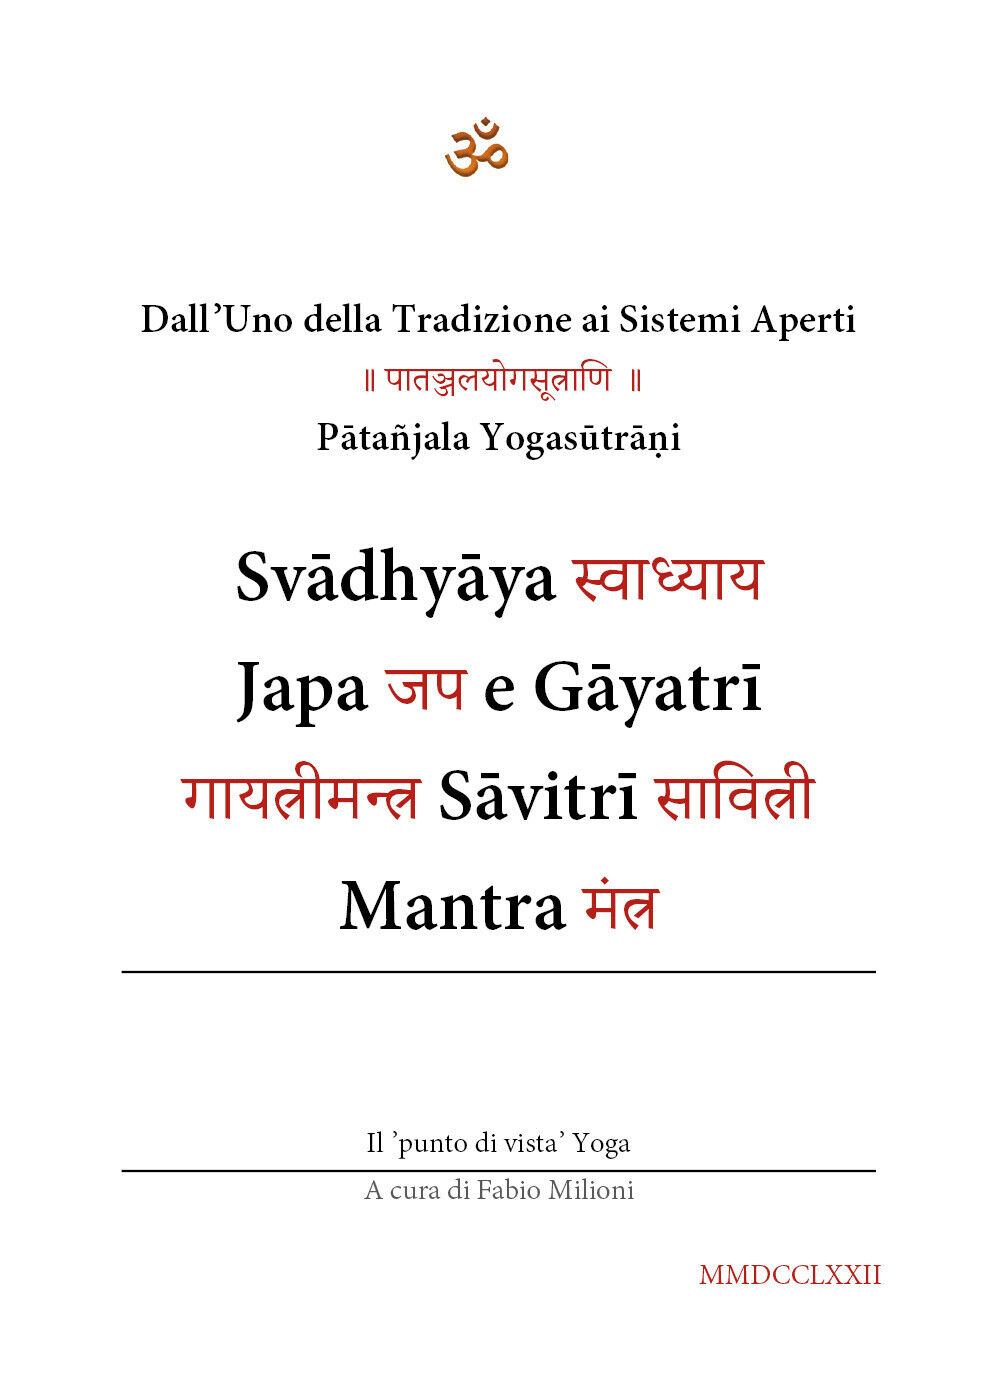 Svadhyaya, Japa e Gayatri Savitri Mantra. DalL'uno della tradizione ai sistemi a